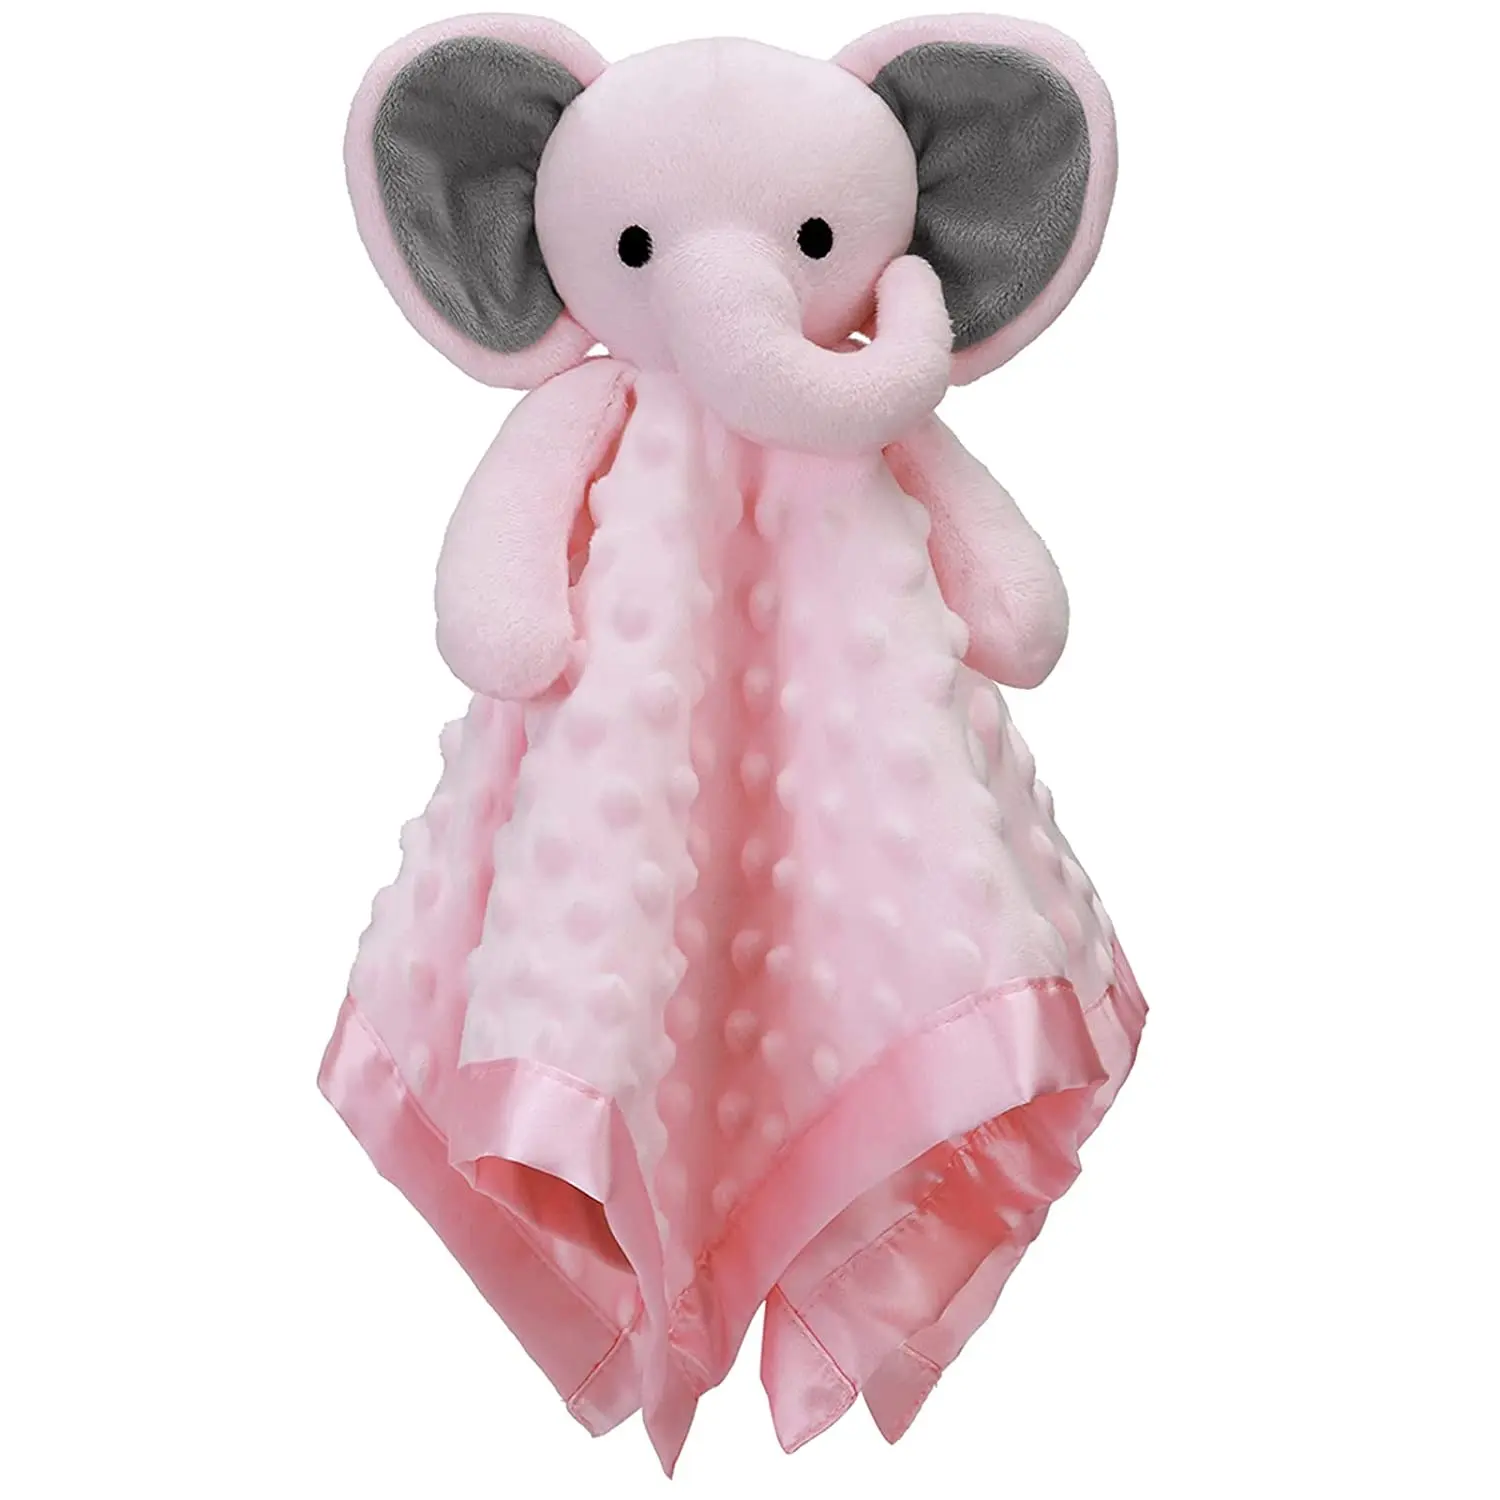 Presentes, elefante Cobertor De Segurança Aconchegar Brinquedo com Animal De Pelúcia Lovey Lovie Macio Pesquisa Do Registro Do Bebê Menina Elefante Personalizado